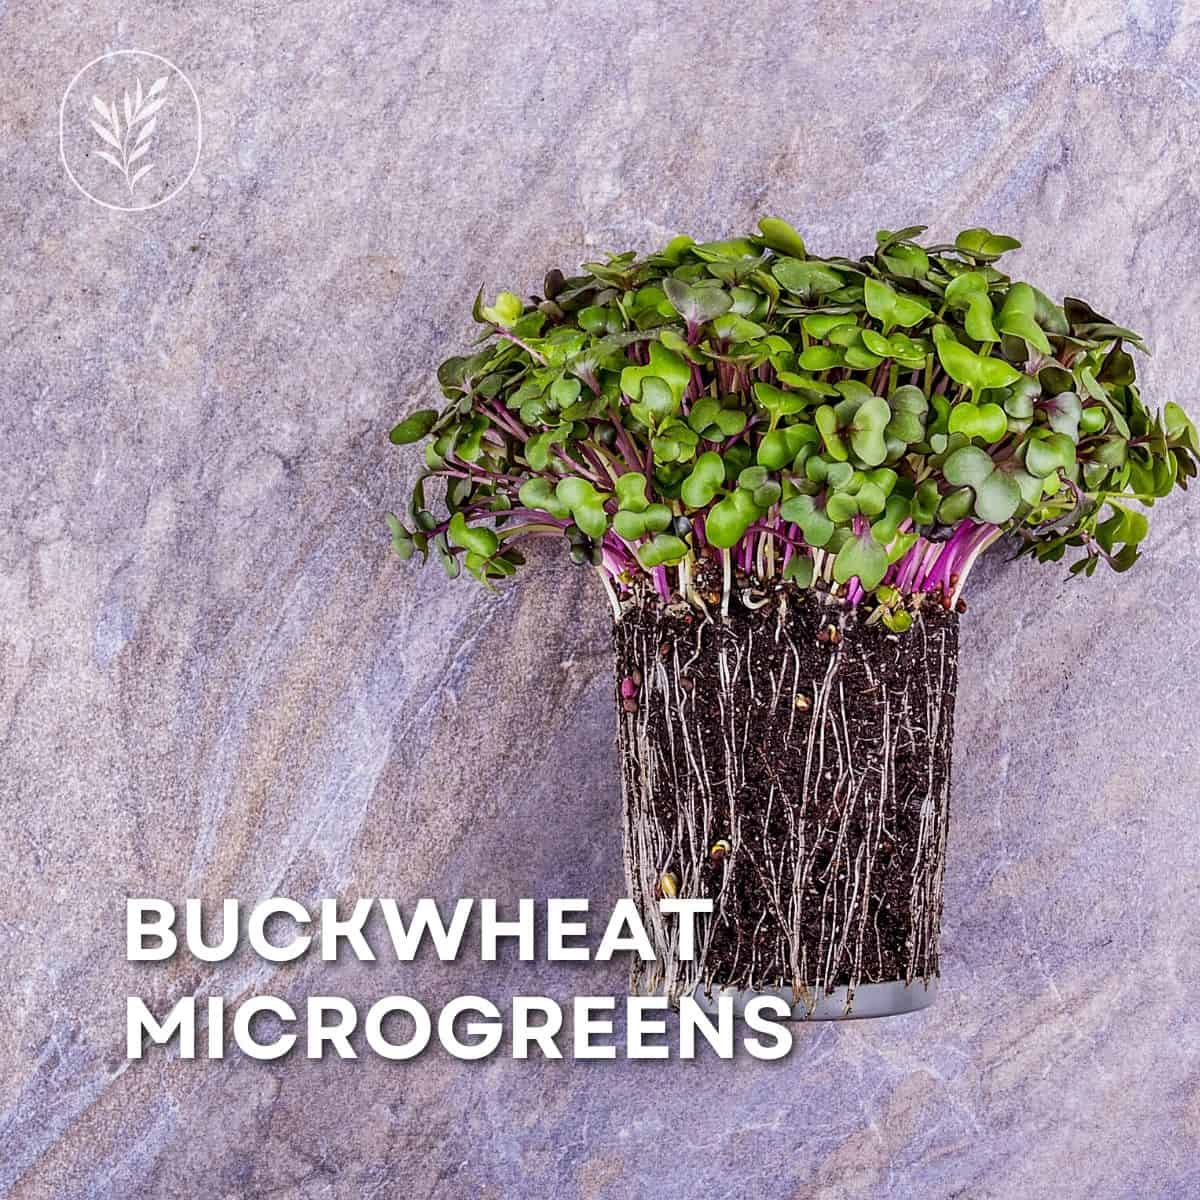 Buckwheat microgreens via @home4theharvest